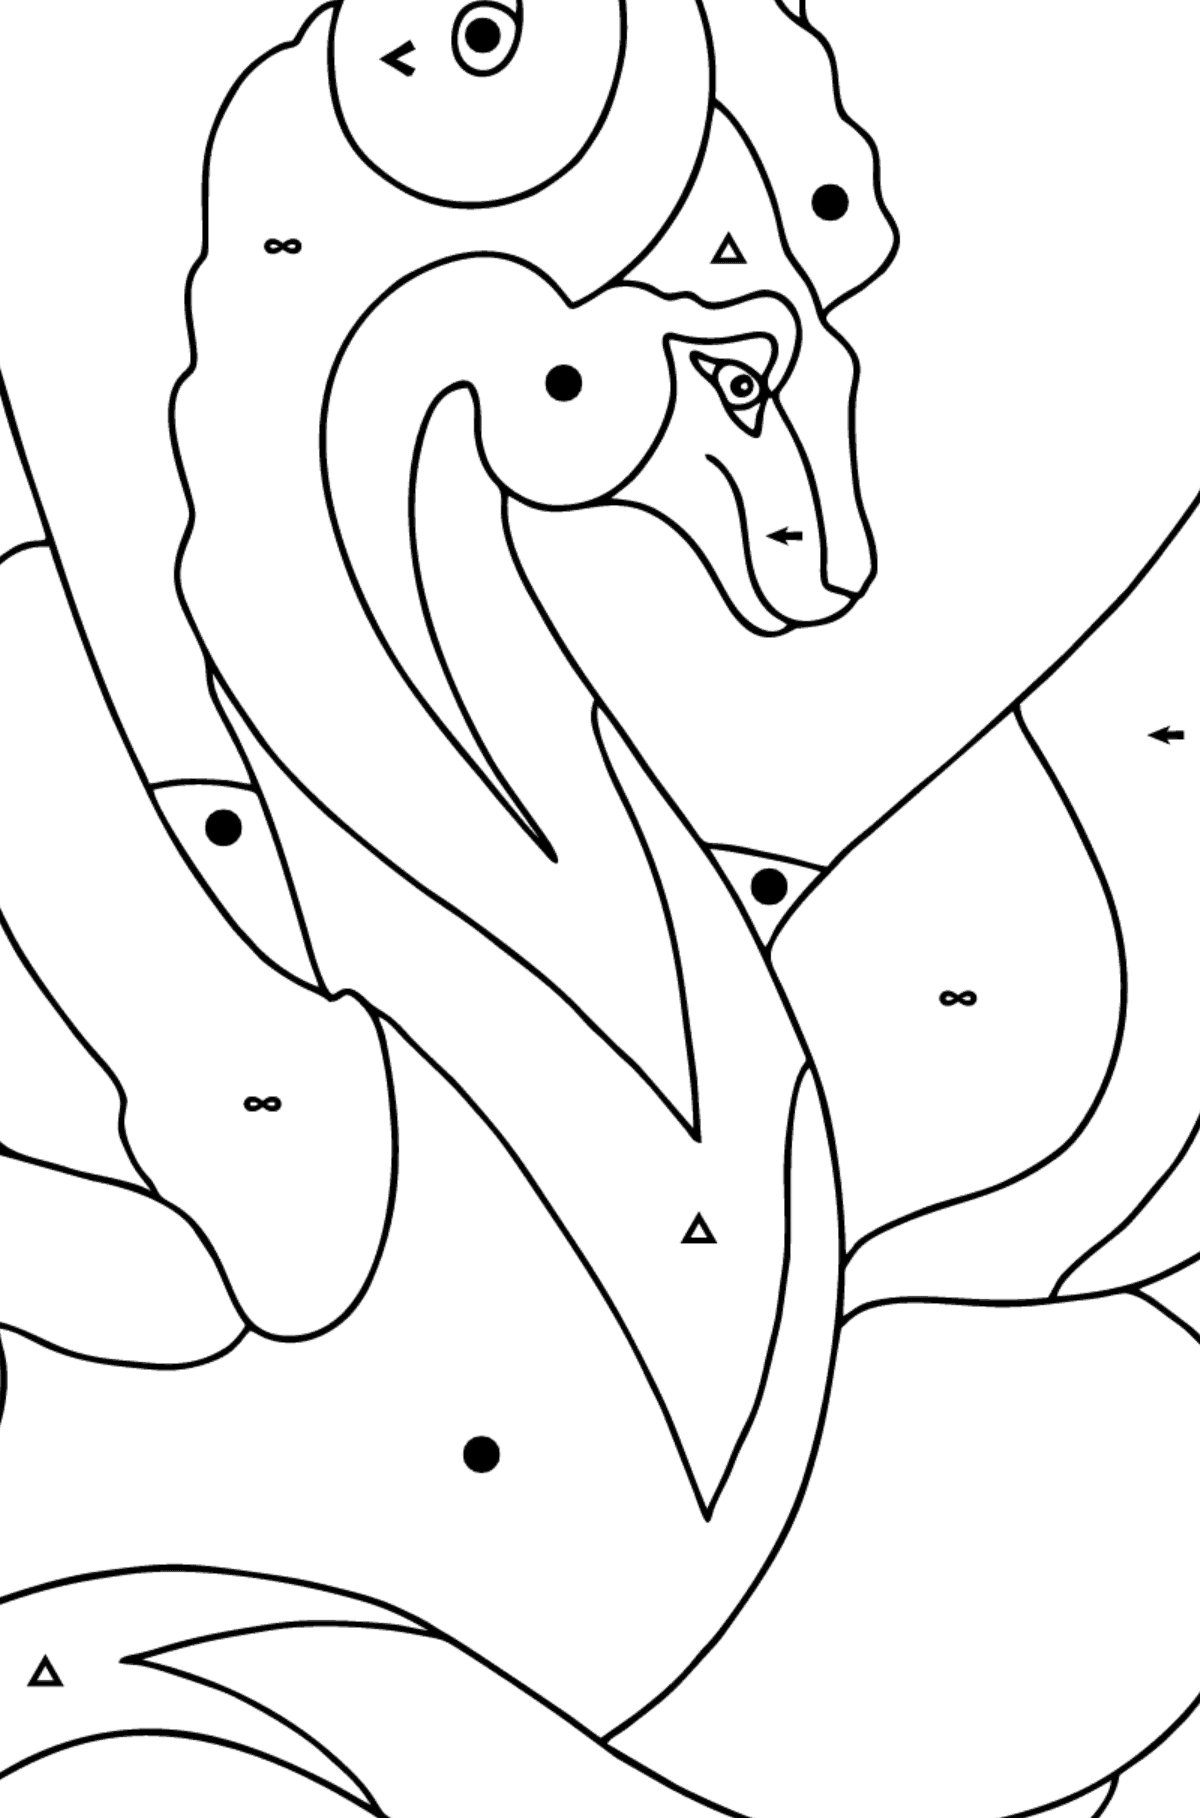 Dibujo de Dragón Bueno (Difícil) para colorear - Colorear por Símbolos para Niños